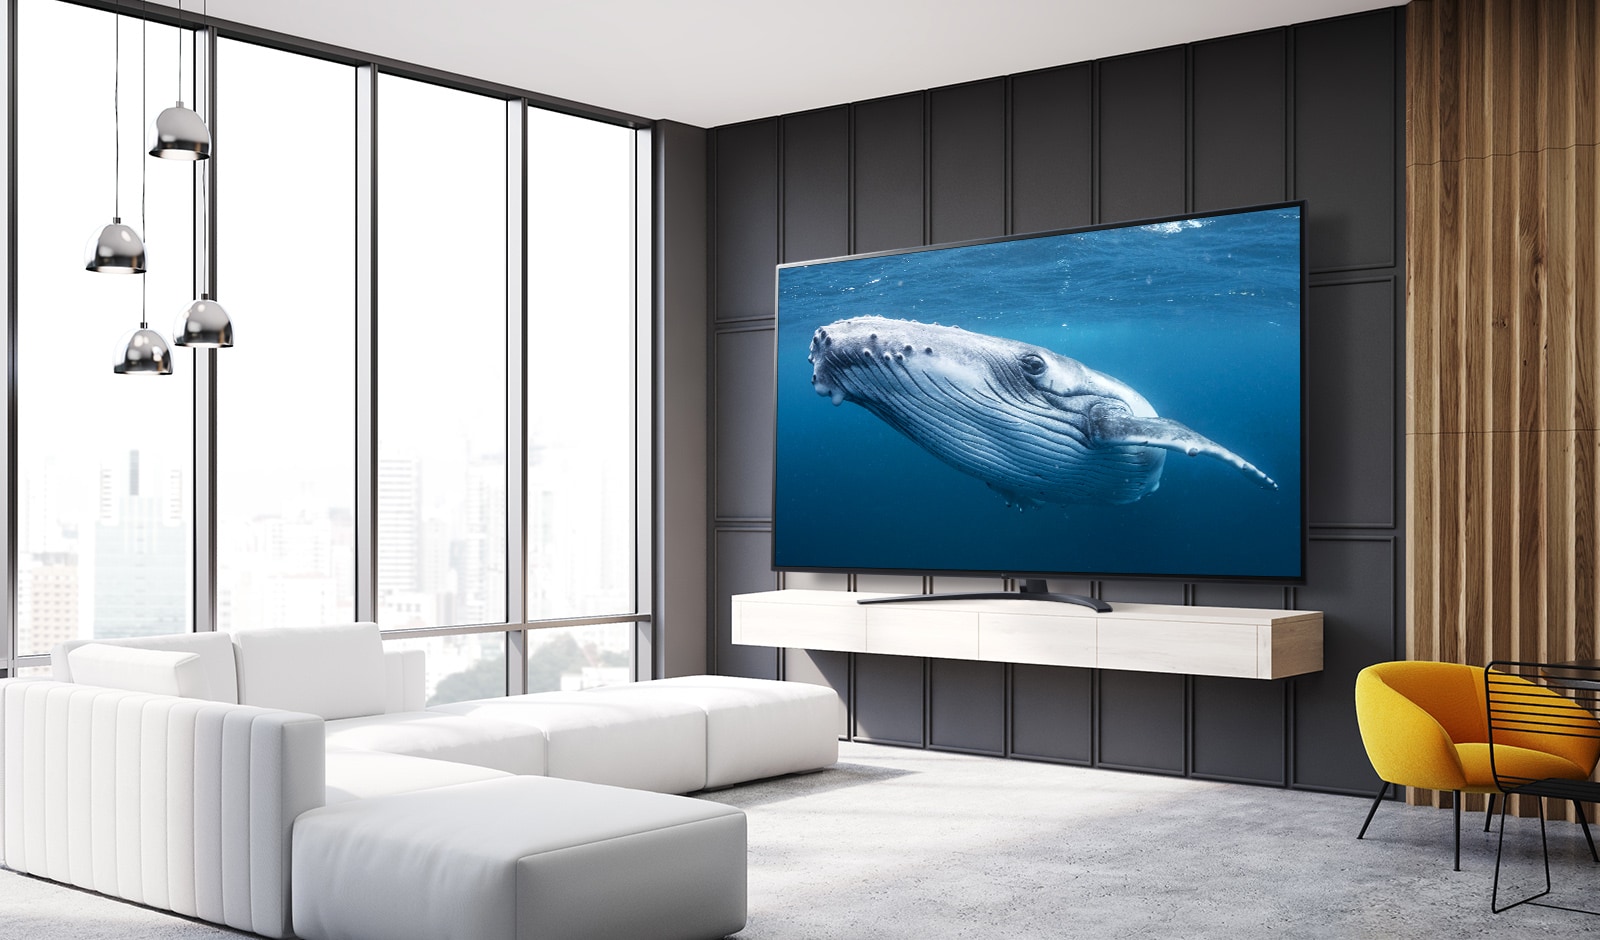 في غرفة المعيشة، يوجد تلفاز بشاشة كبيرة تعرض صورة لحوت كبير في البحر. 